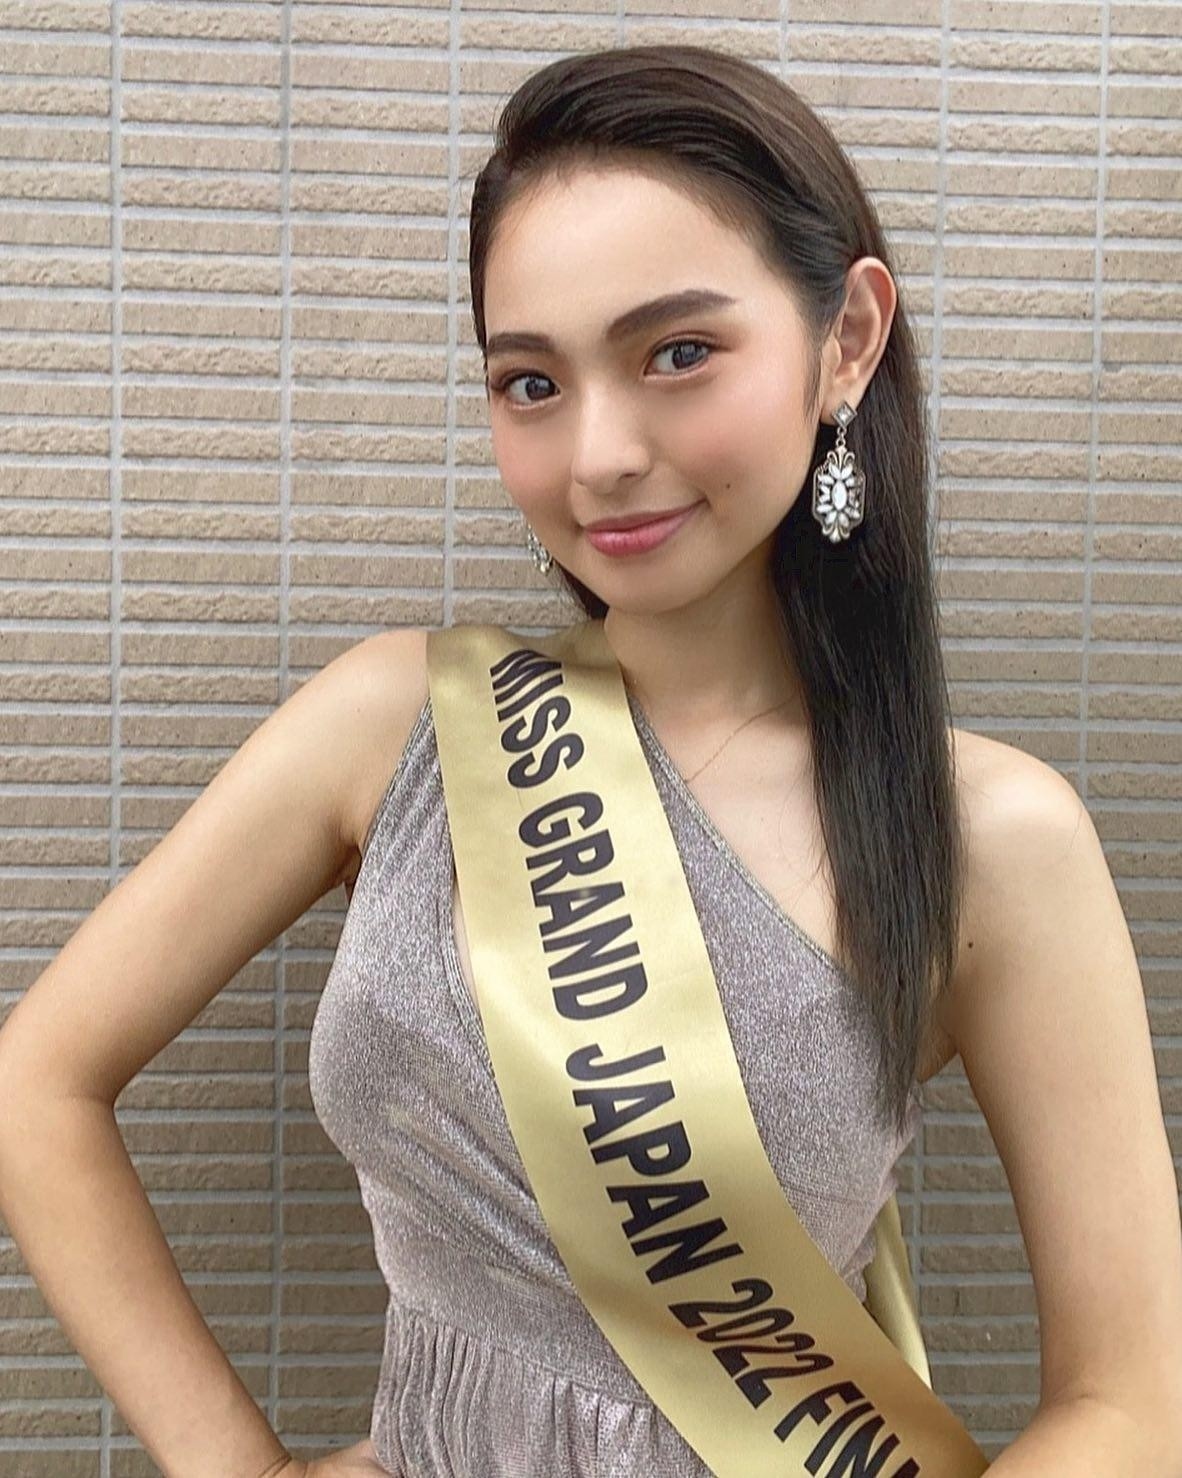 Vẻ đẹp lai của cô gái 26 tuổi đăng quang Hoa hậu Hòa bình Nhật Bản ...